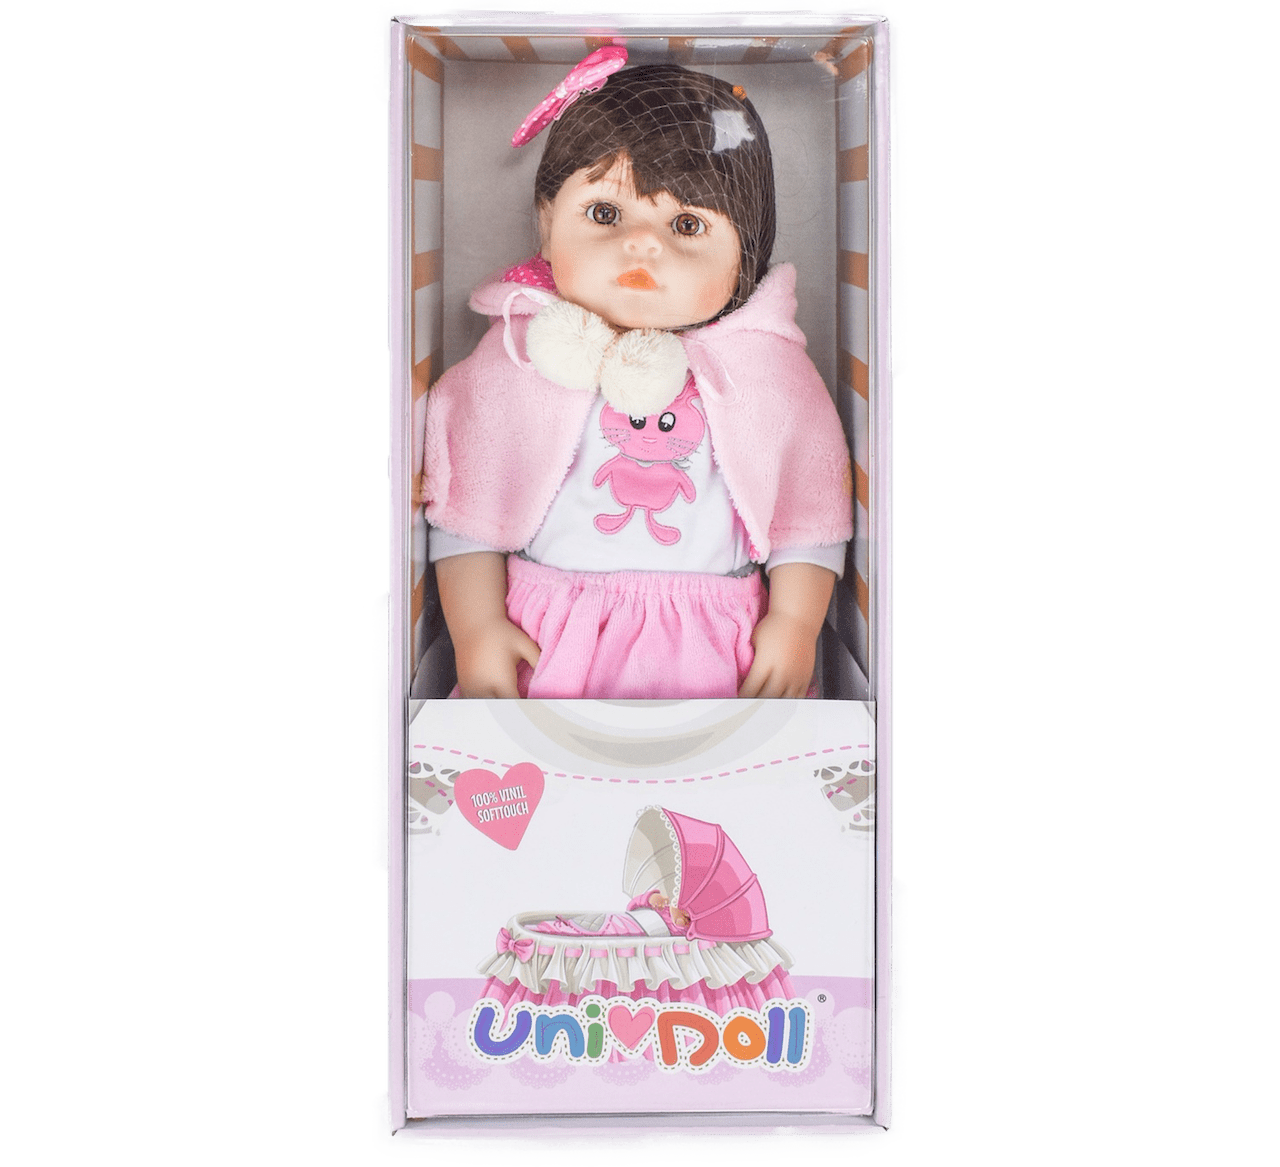 Boneca Bebê Reborn Realista Menina Silicone Pode Dar Banho - Milk  Brinquedos - Boneca Reborn - Magazine Luiza